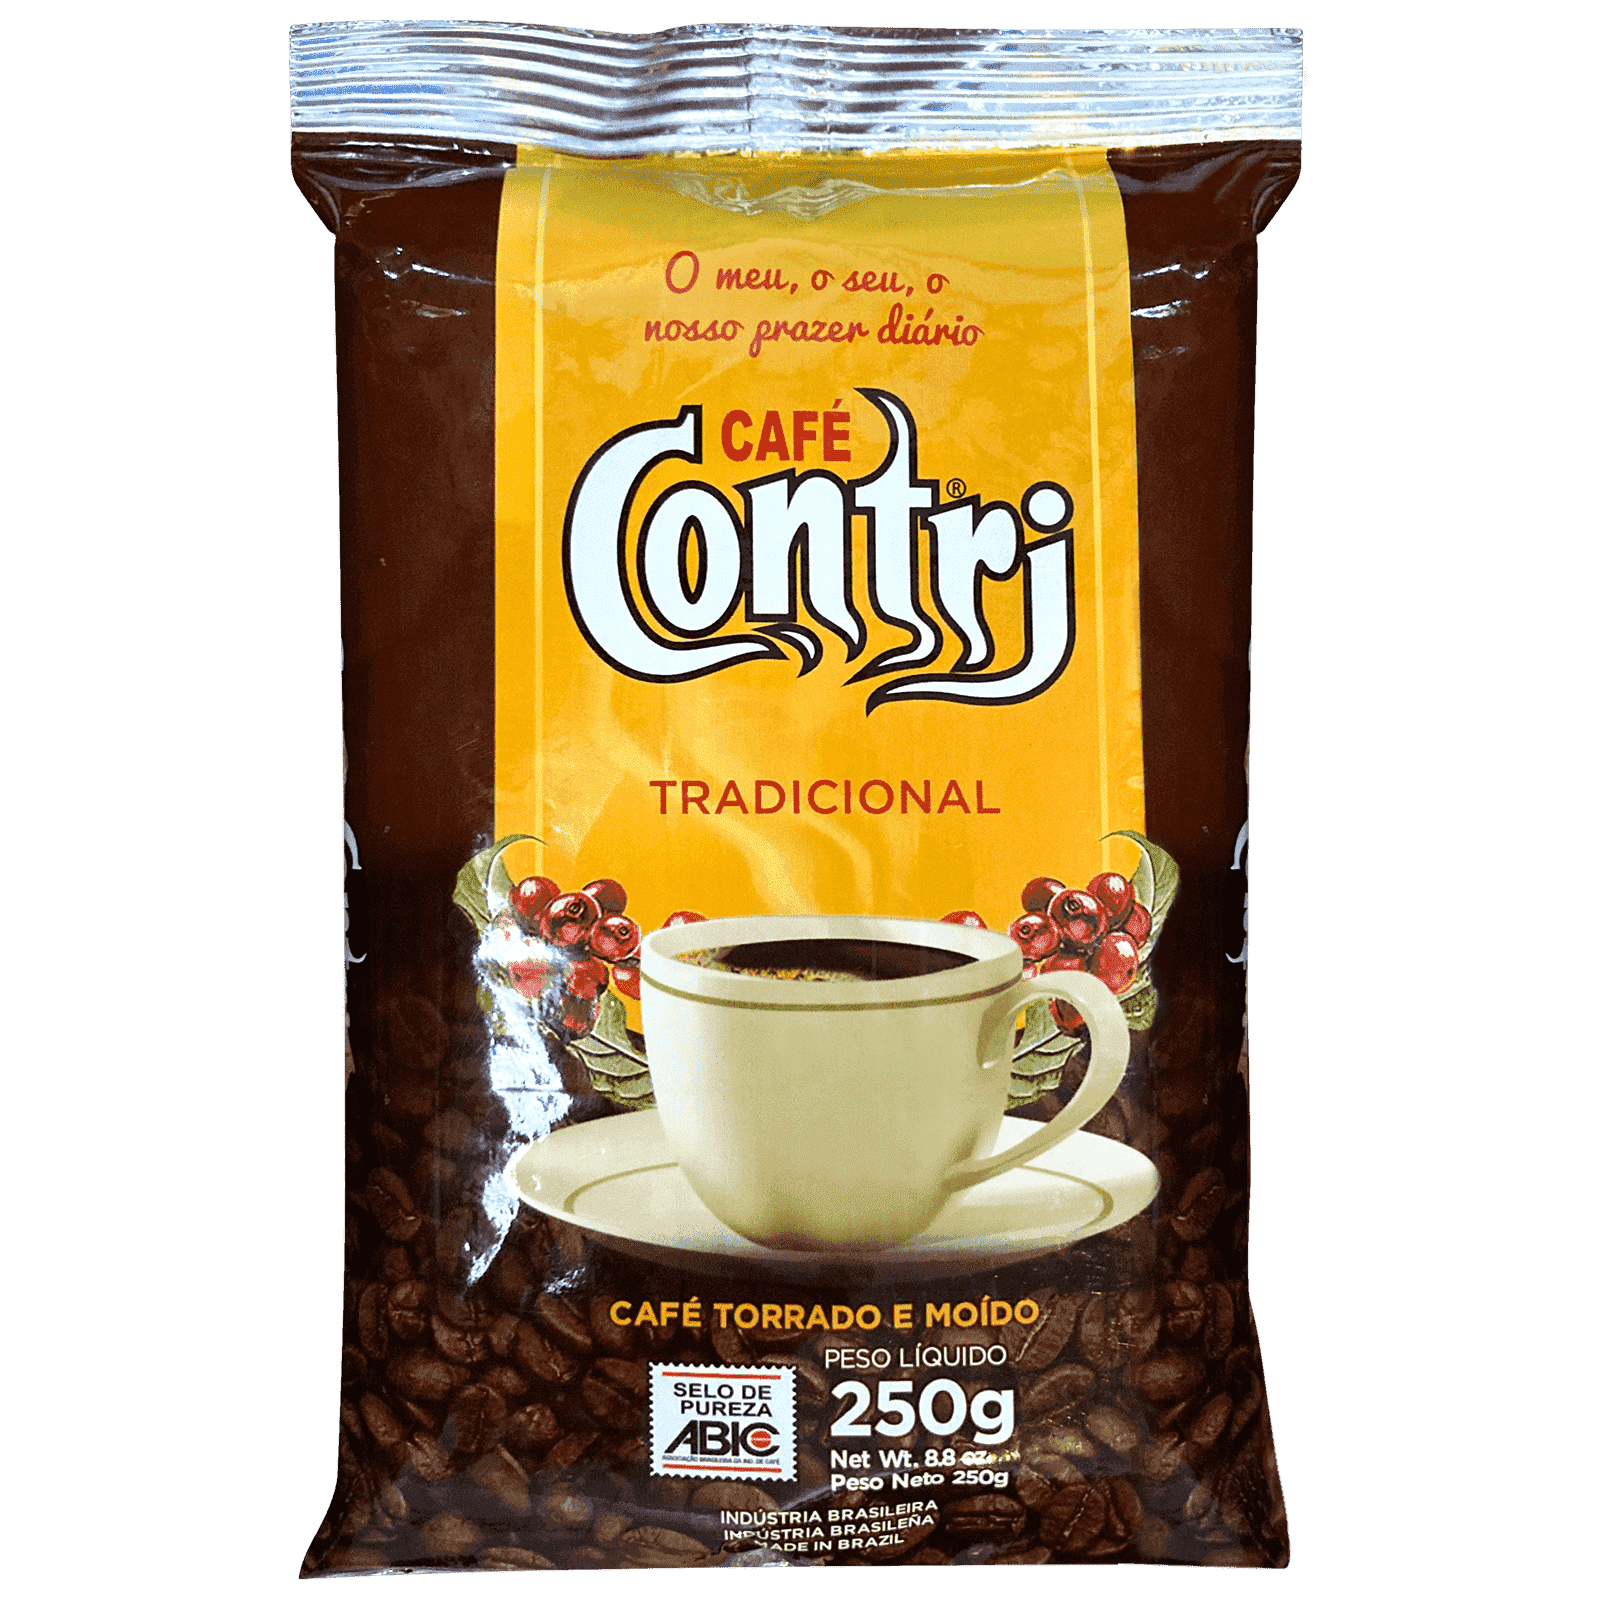 Kit Café - Arábica e Conilon